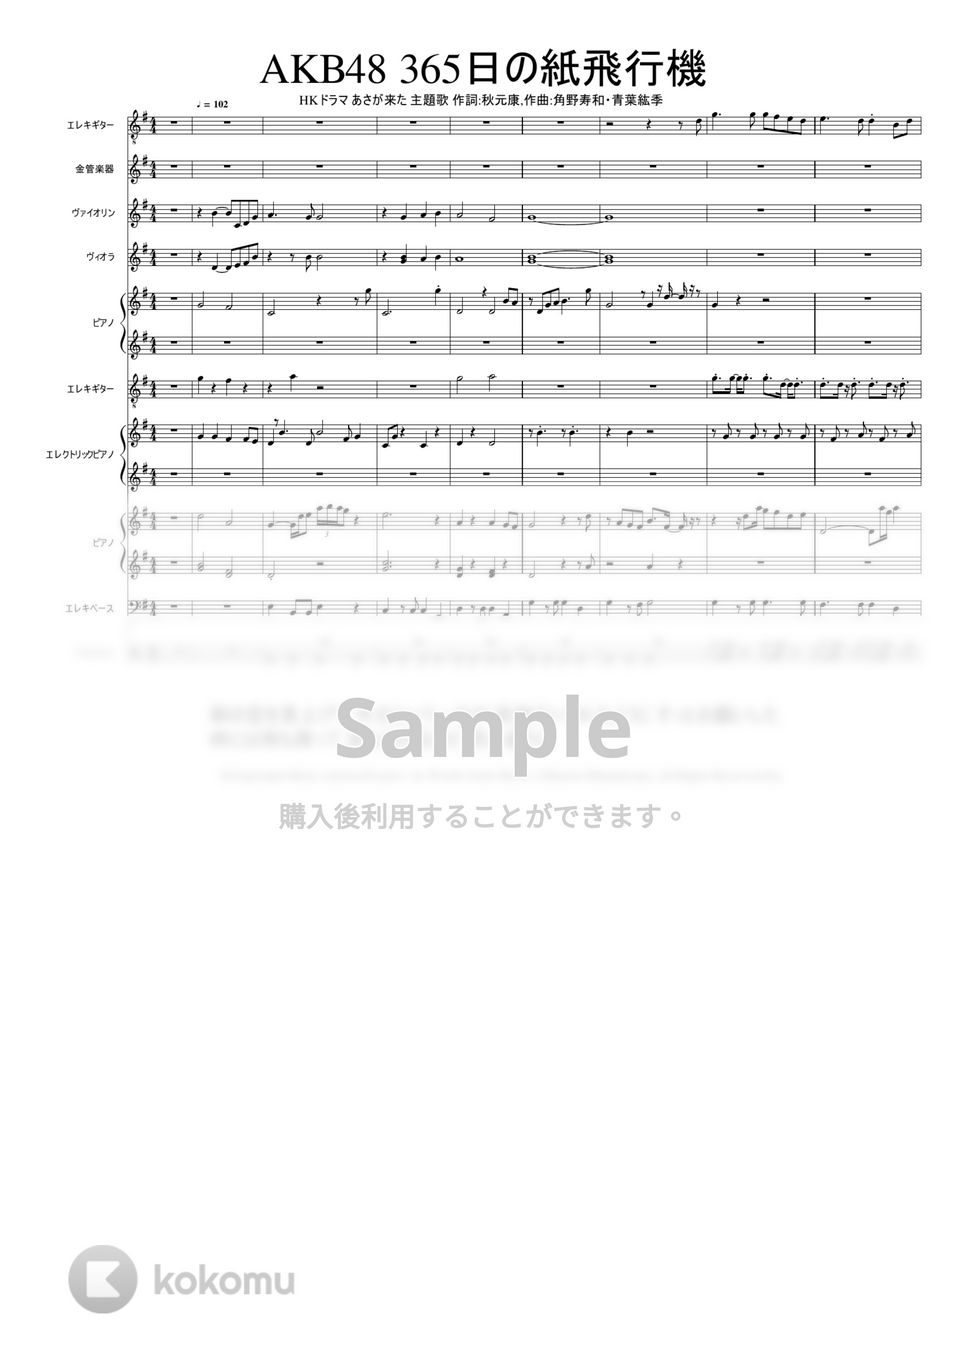 歌手：AKB48 　作詞：秋元康. 作曲：角野寿和/青葉紘季 - ３６５日の紙飛行機 by Mitsuru Minamiyama